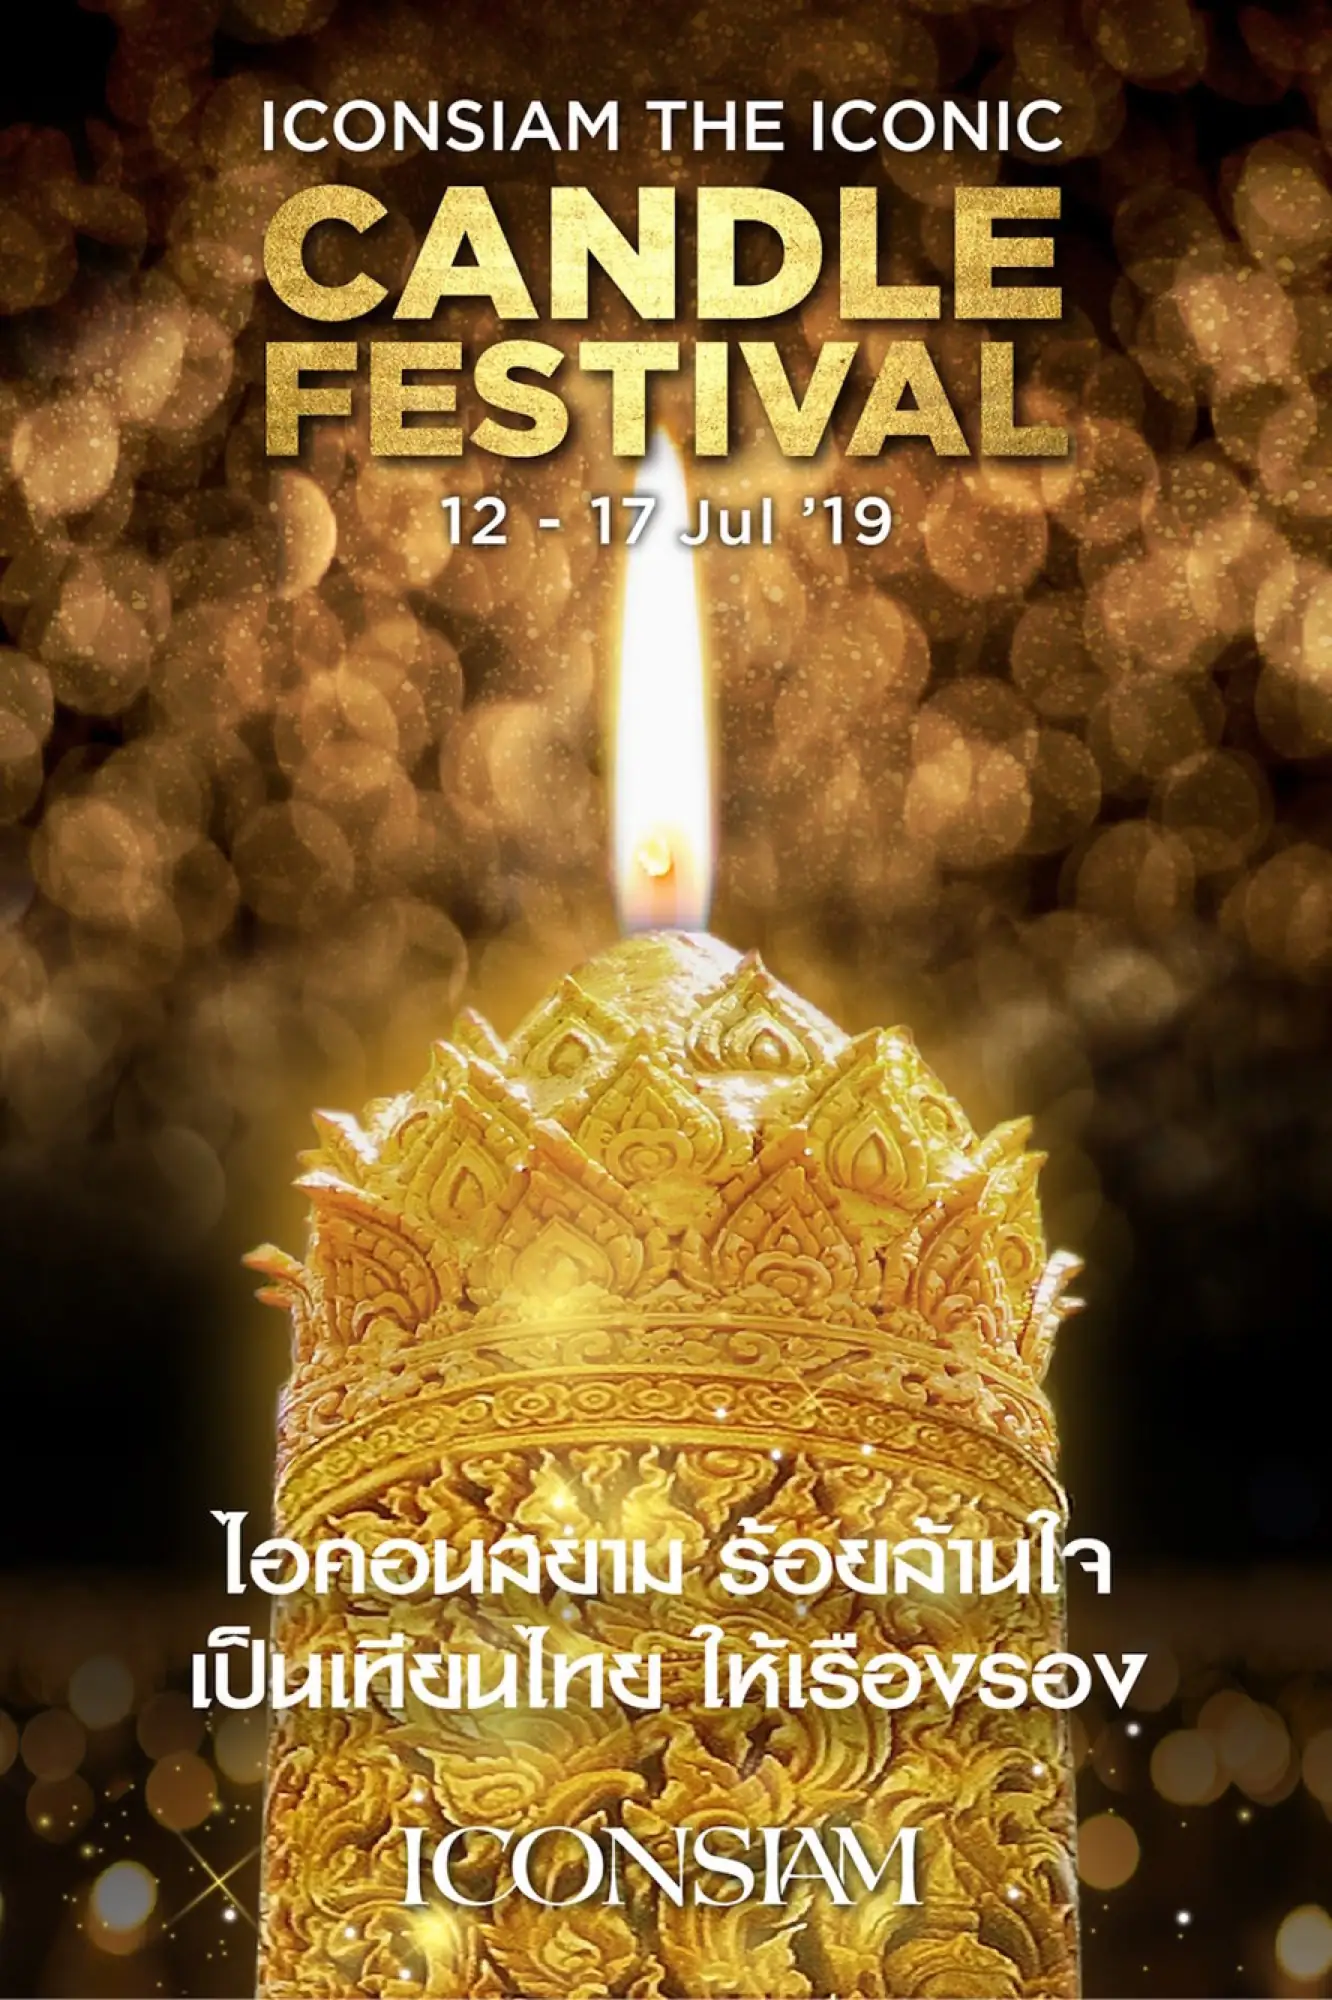 曼谷 暹羅天地 曼谷 ICONSIAM 泰國 蠟燭節 泰國 守夏節 泰國 文化